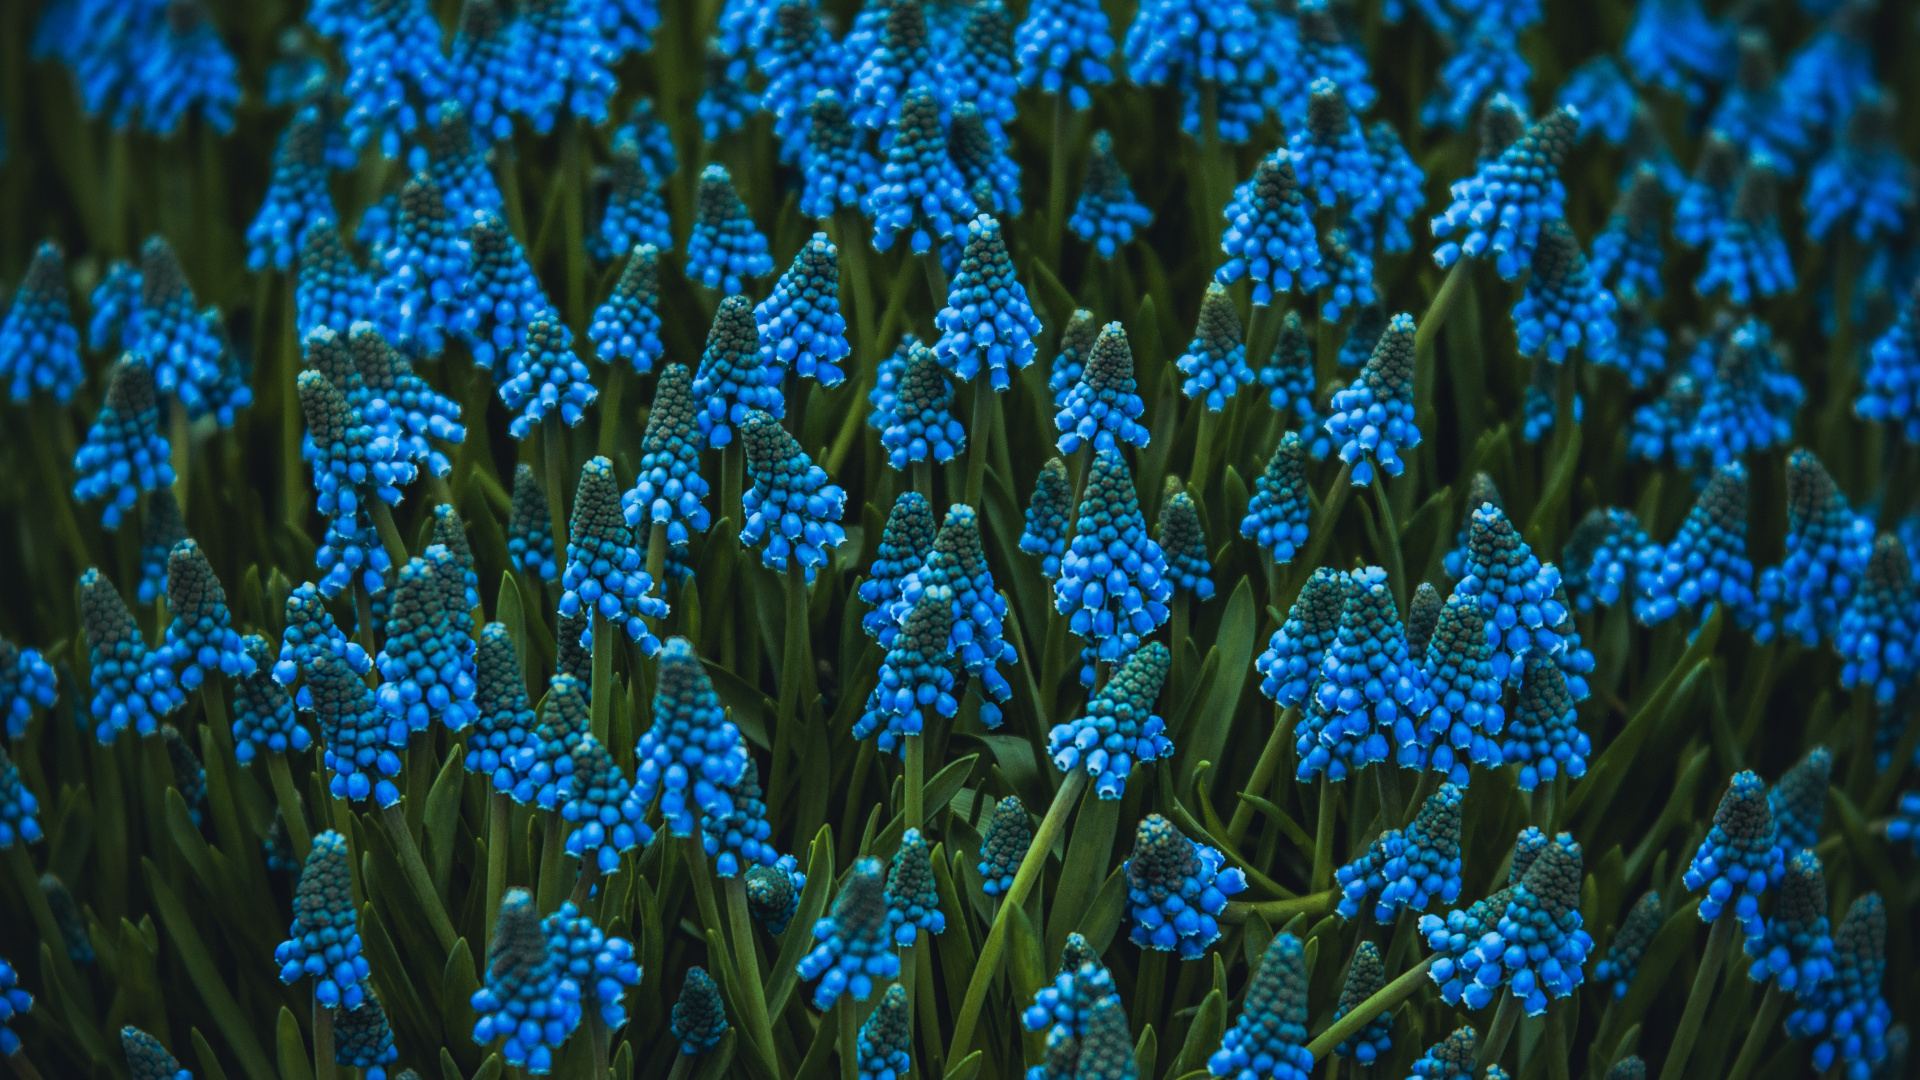 Blue Flowers in Tilt Shift Lens. Wallpaper in 1920x1080 Resolution